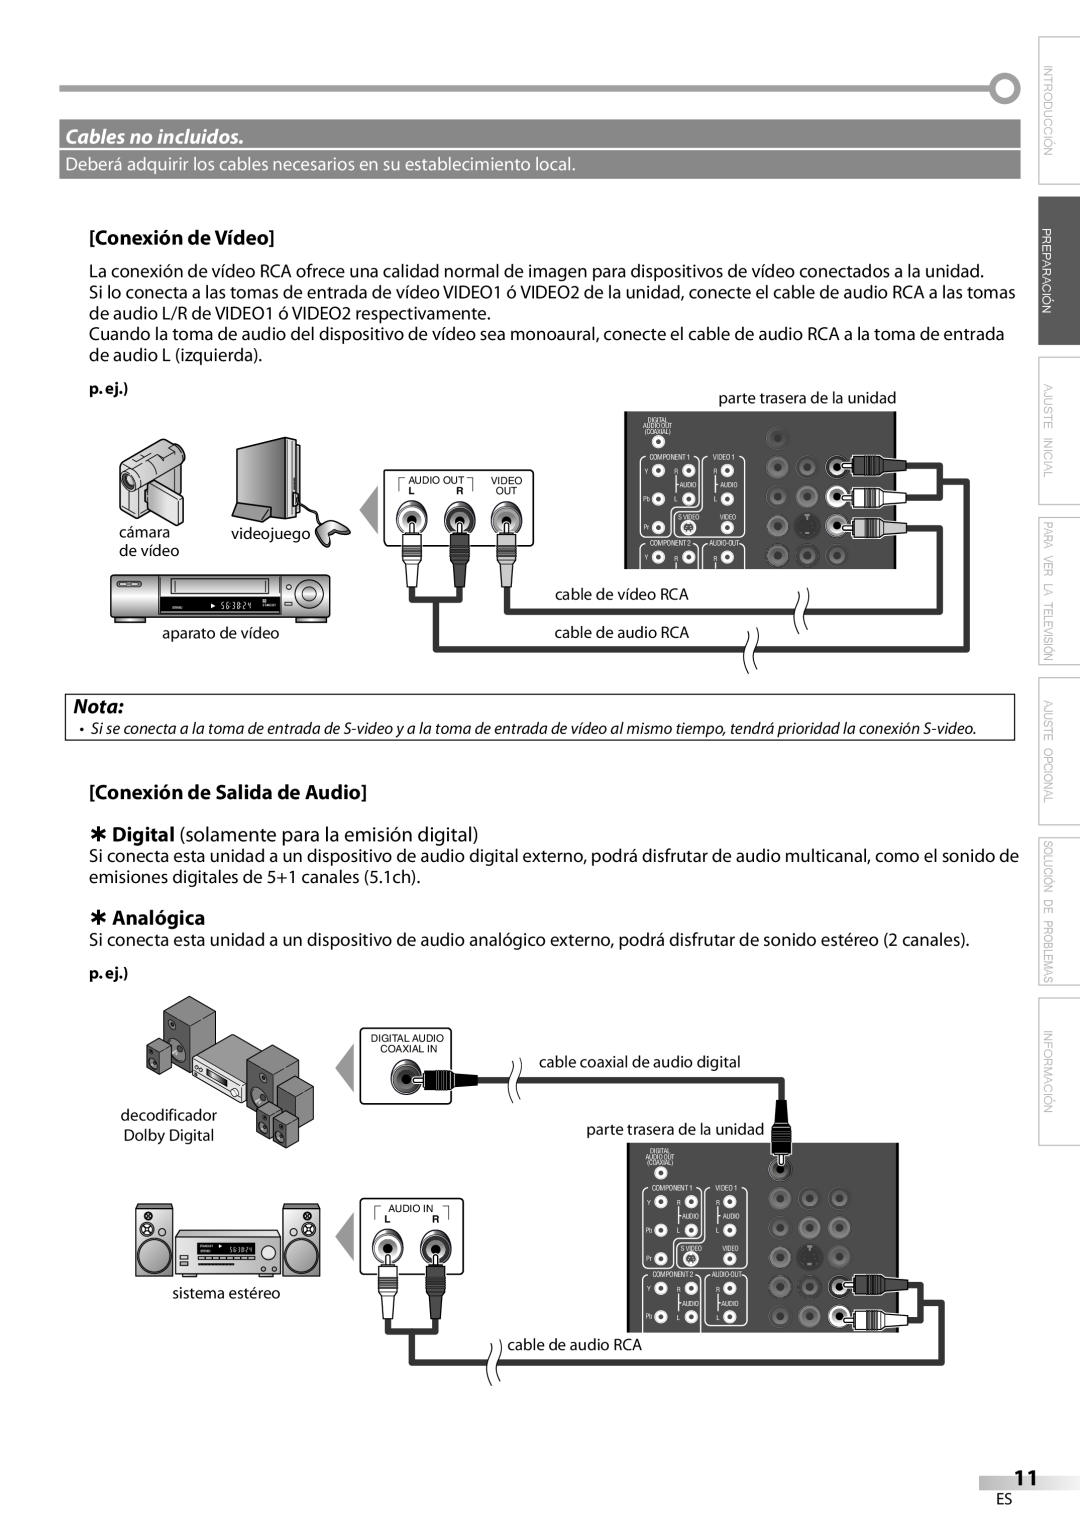 Emerson LC420EM8 Cables no incluidos, Conexión de Vídeo, Nota, Conexión de Salida de Audio, À Analógica, Información 